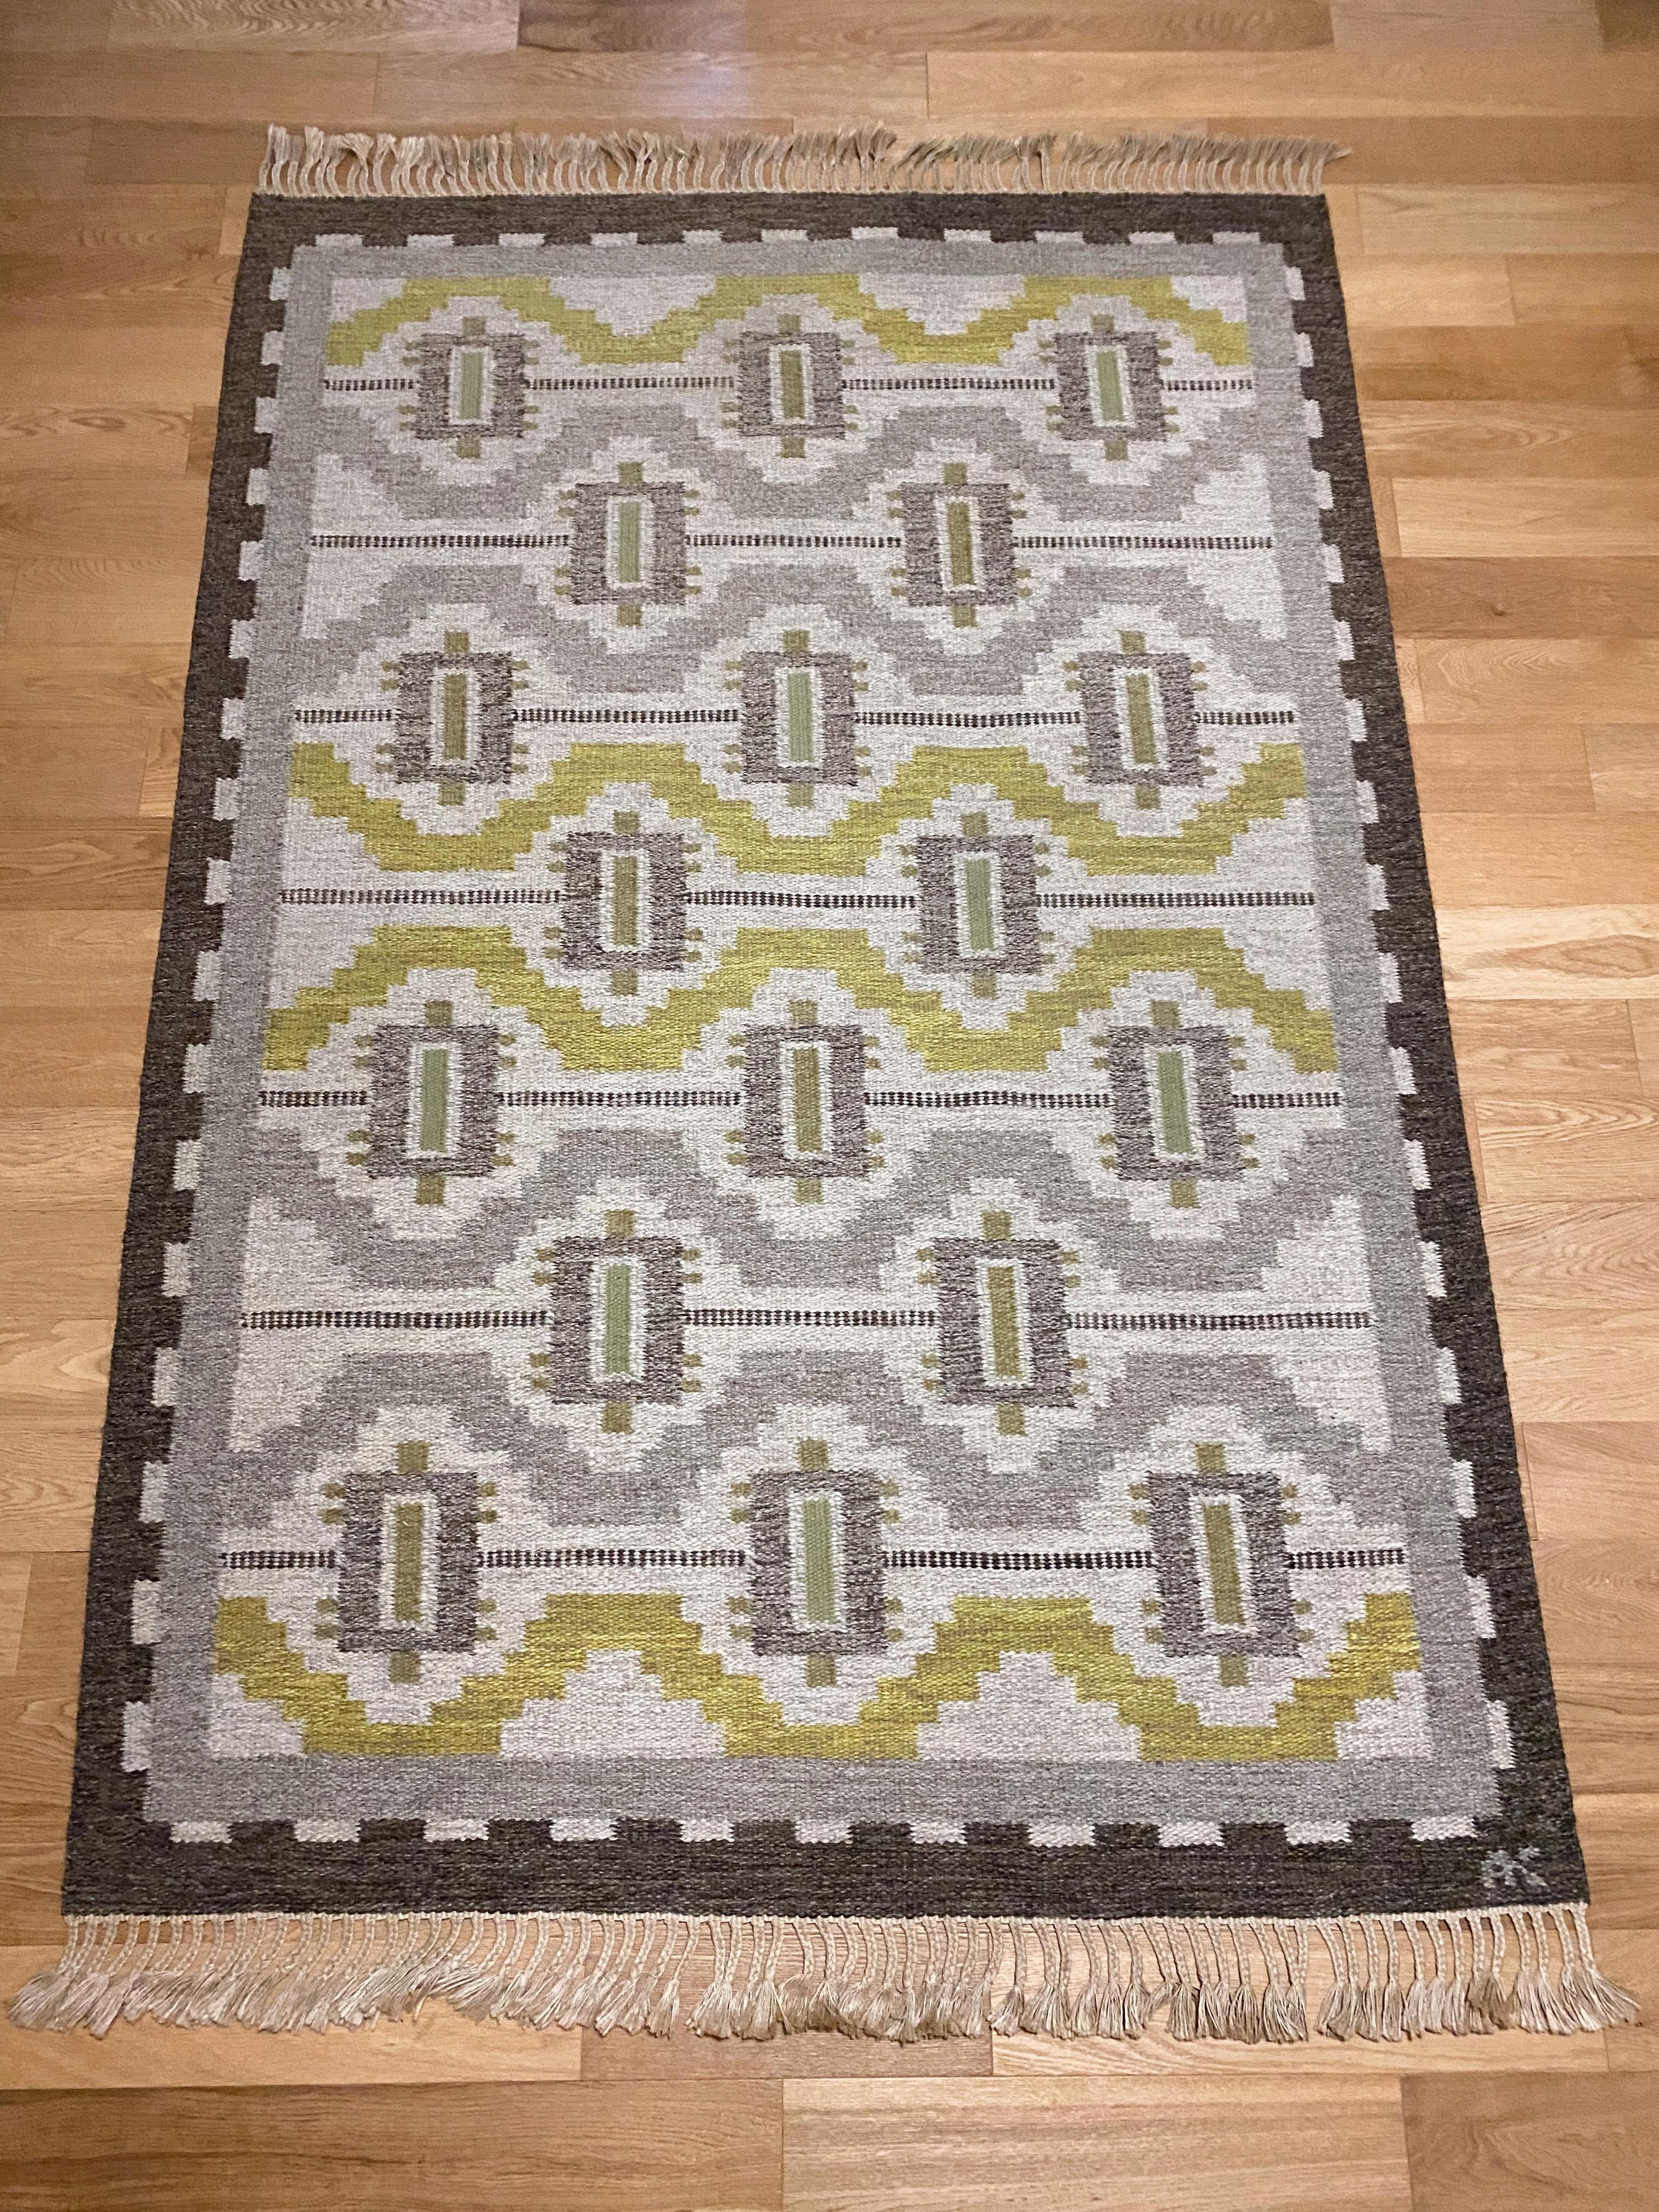 Wunderschöner schwedischer Vintage-Teppich von Aina Kånge. Geometrisches Design im Geiste der griechischen Wiedergeburt, wie viele von Aina Kånges Teppichen. Grau, gelb, grün und anthrazitfarben. Keine Abnutzungserscheinungen und in sehr gutem